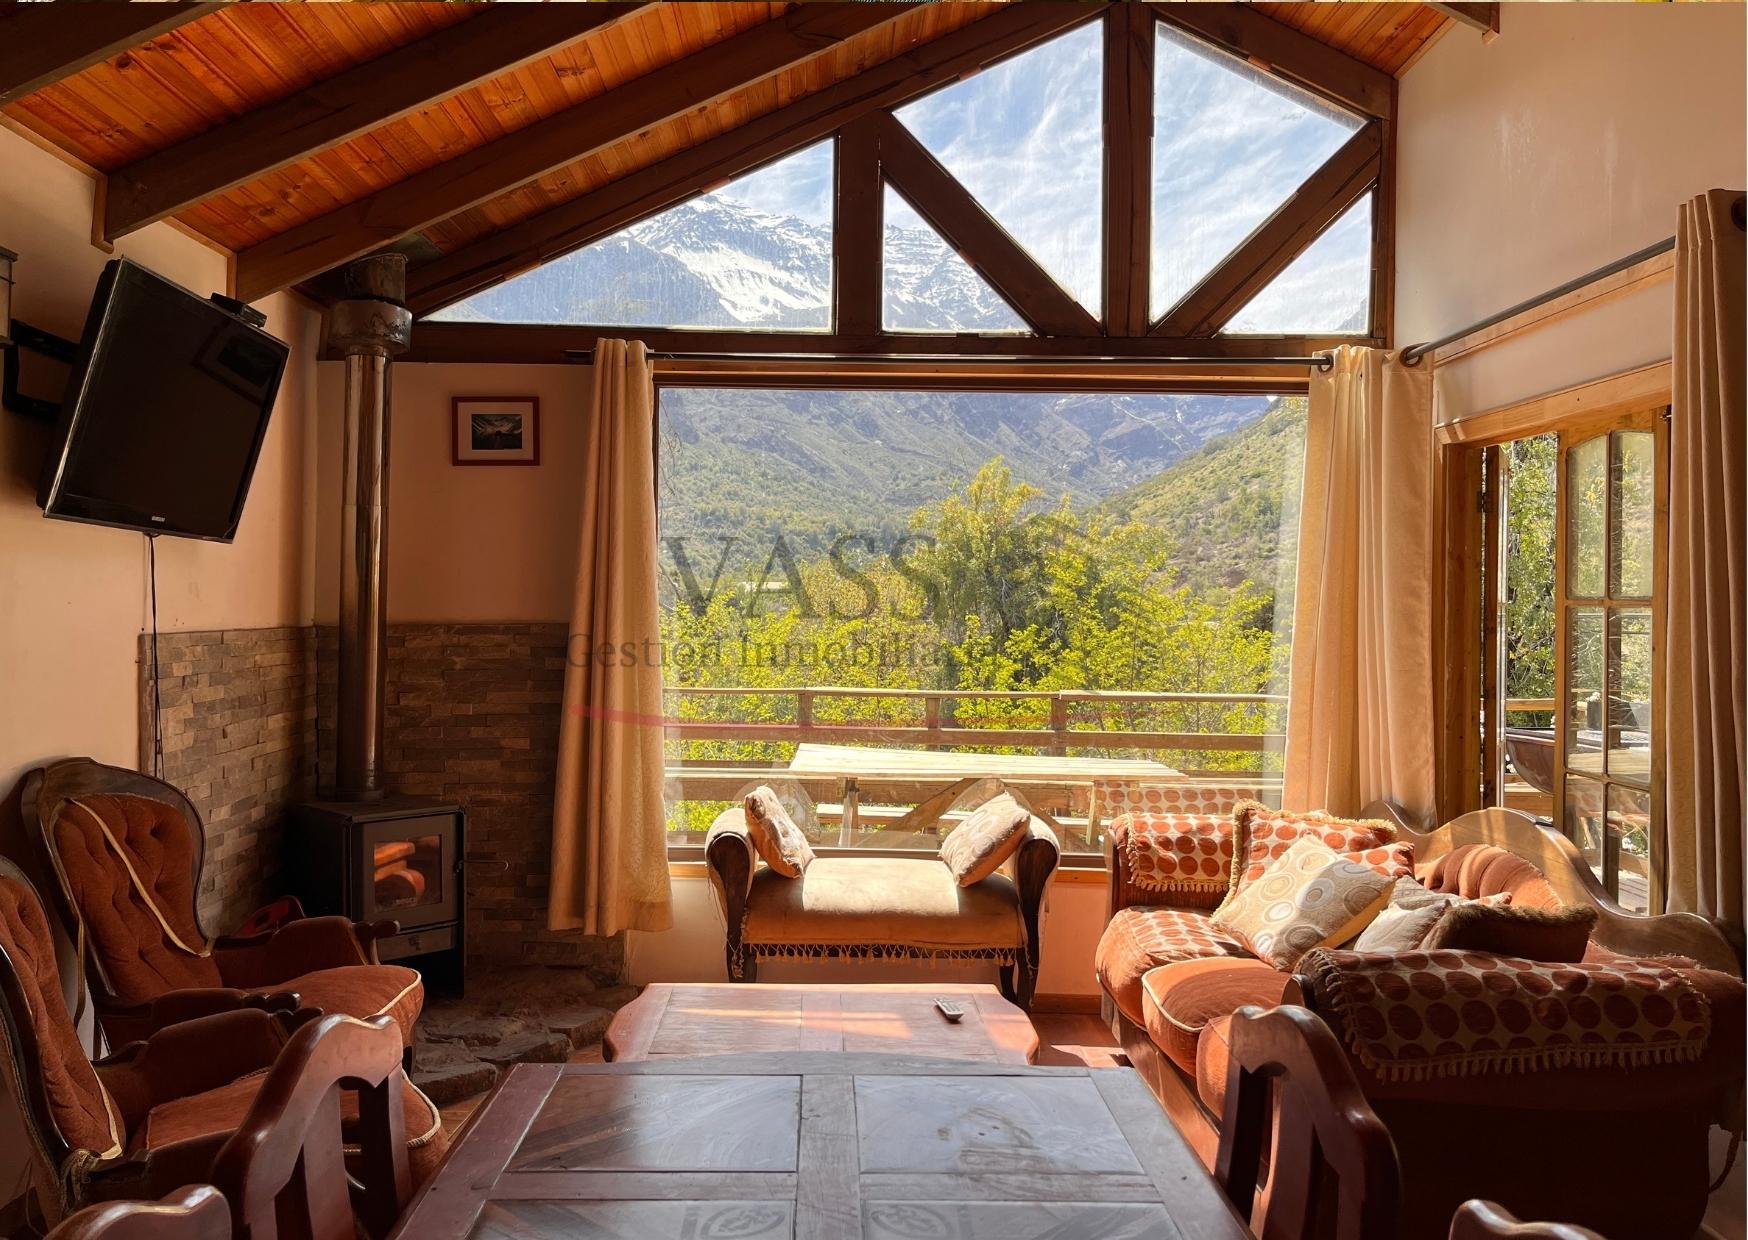 VASS Vende Espectacular Casa En La Cordillera De Los Andes